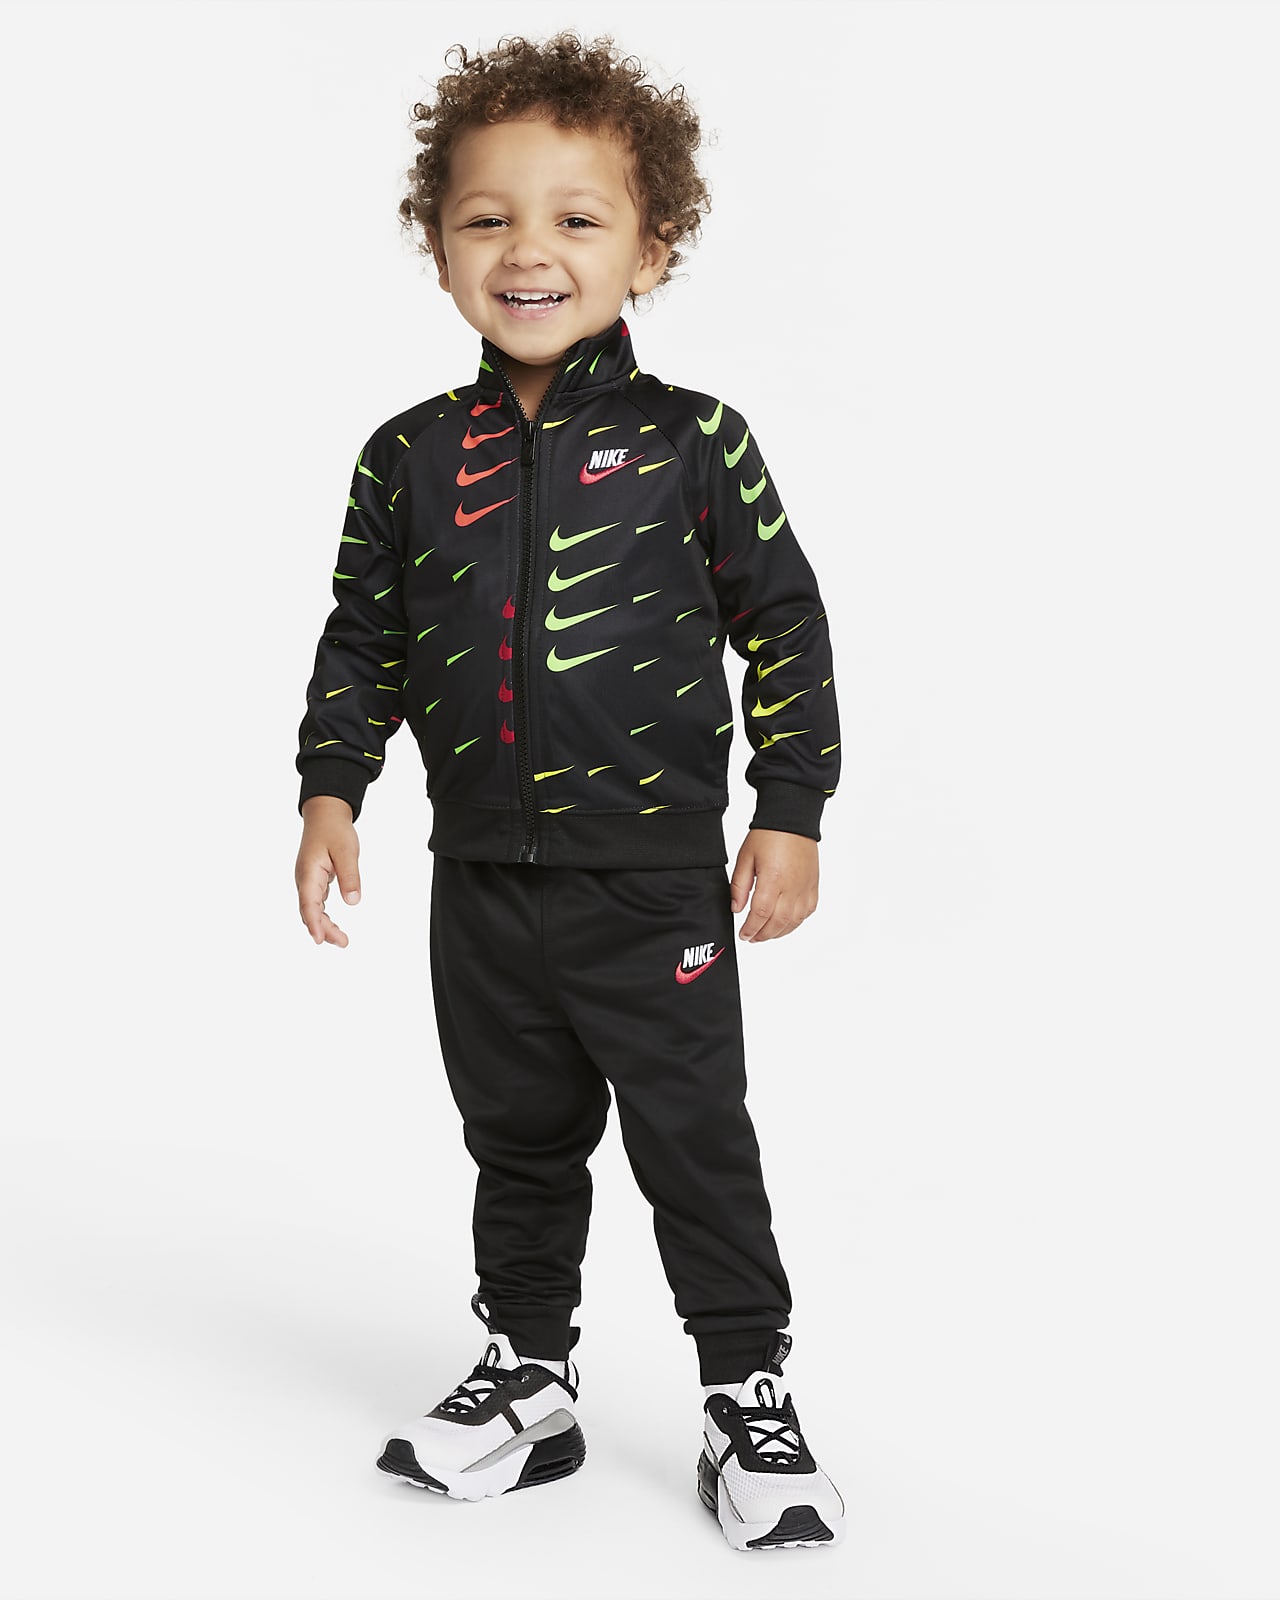 Nike tréningruha babáknak (12-24 hónapos)